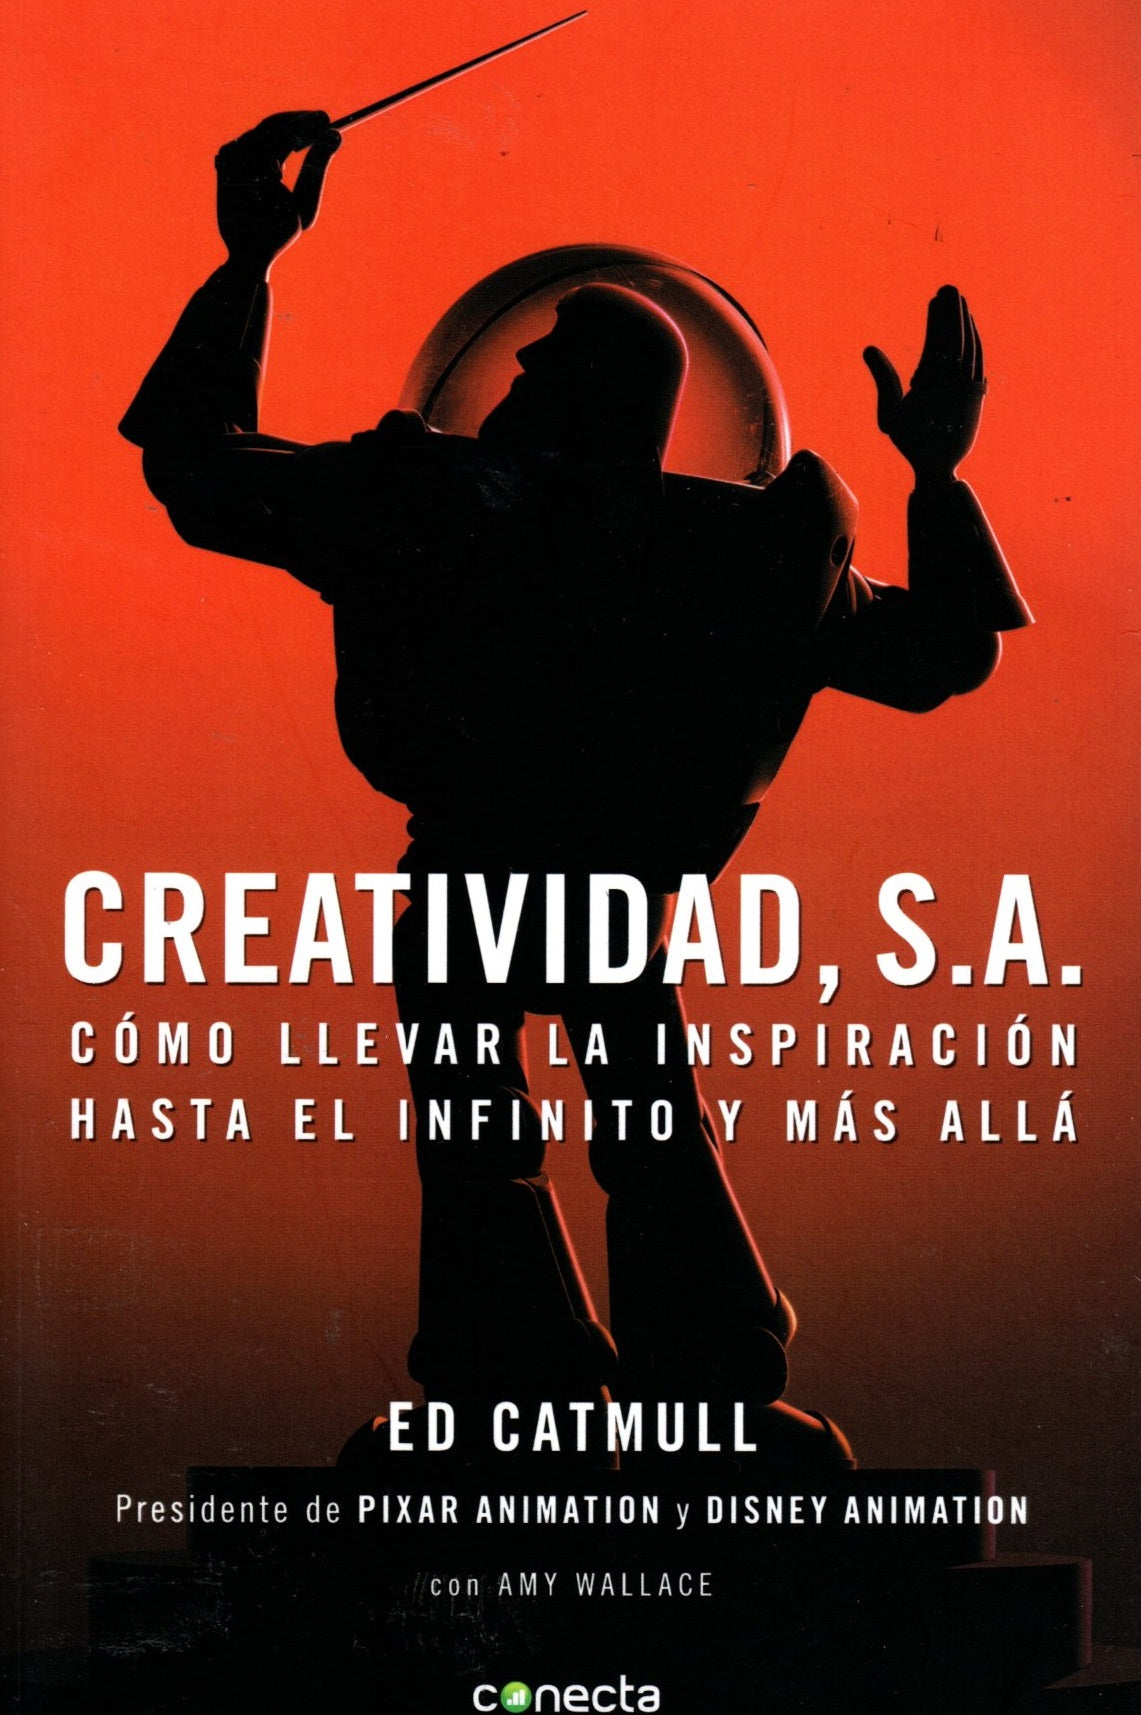 Libro  Ed Catmull  Creatividad, S.A.: Cómo llevar la inspiración hasta el infinito y más allá